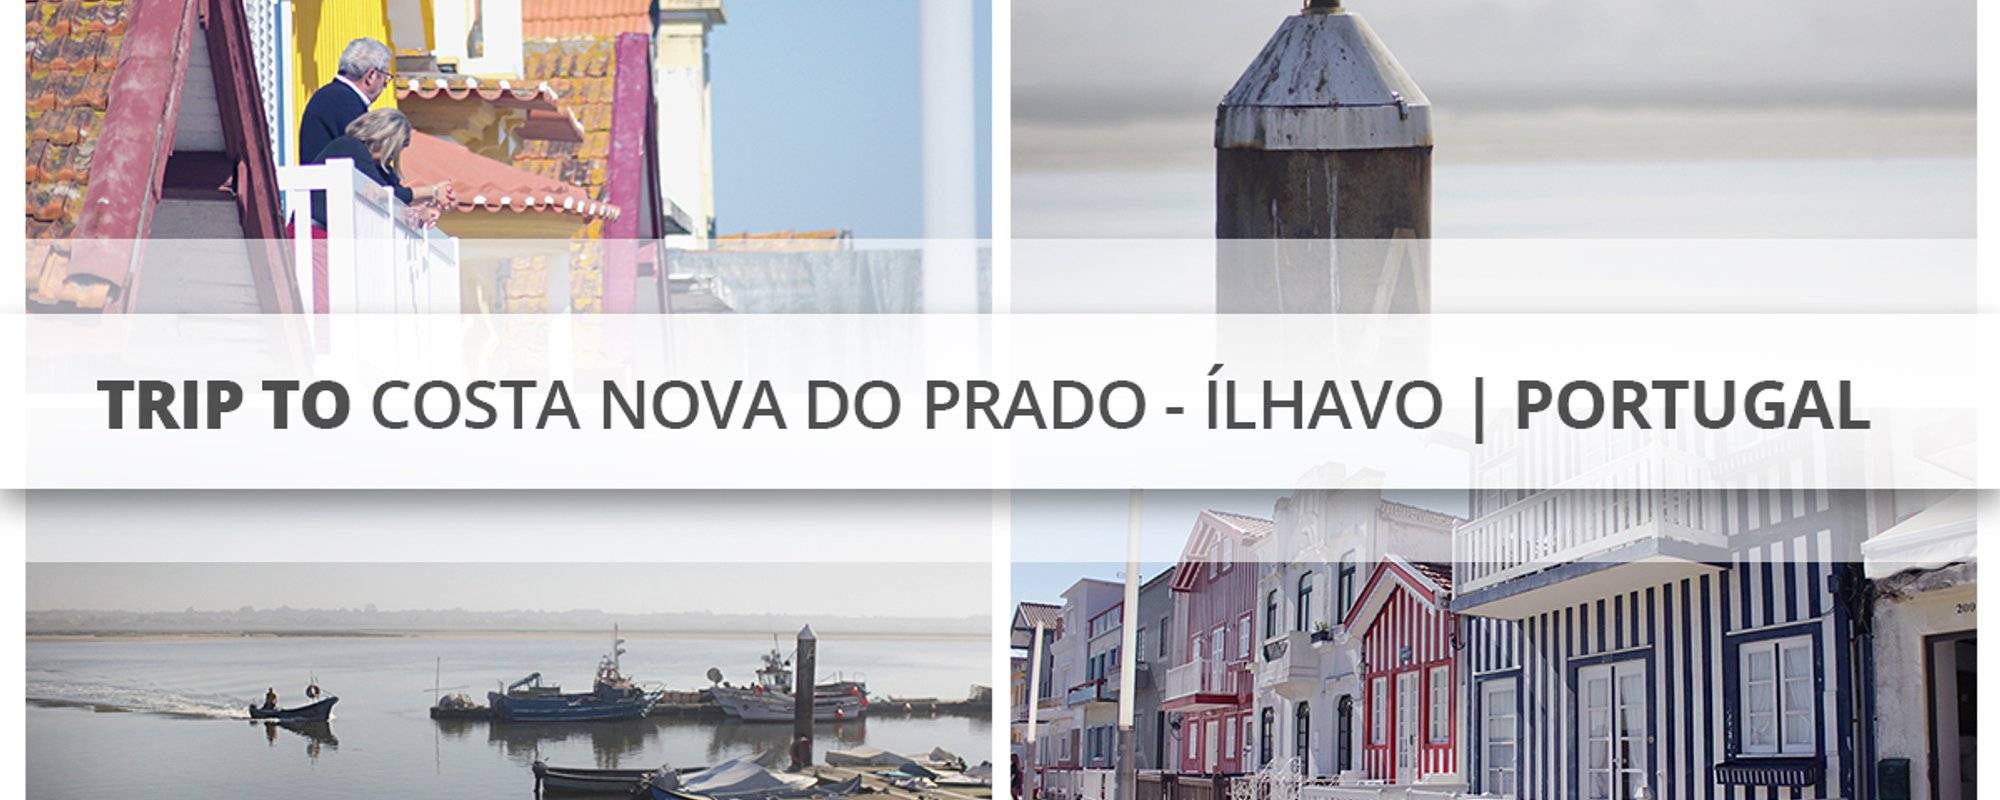 Trip to Costa Nova do Prado - Ílhavo | Portugal